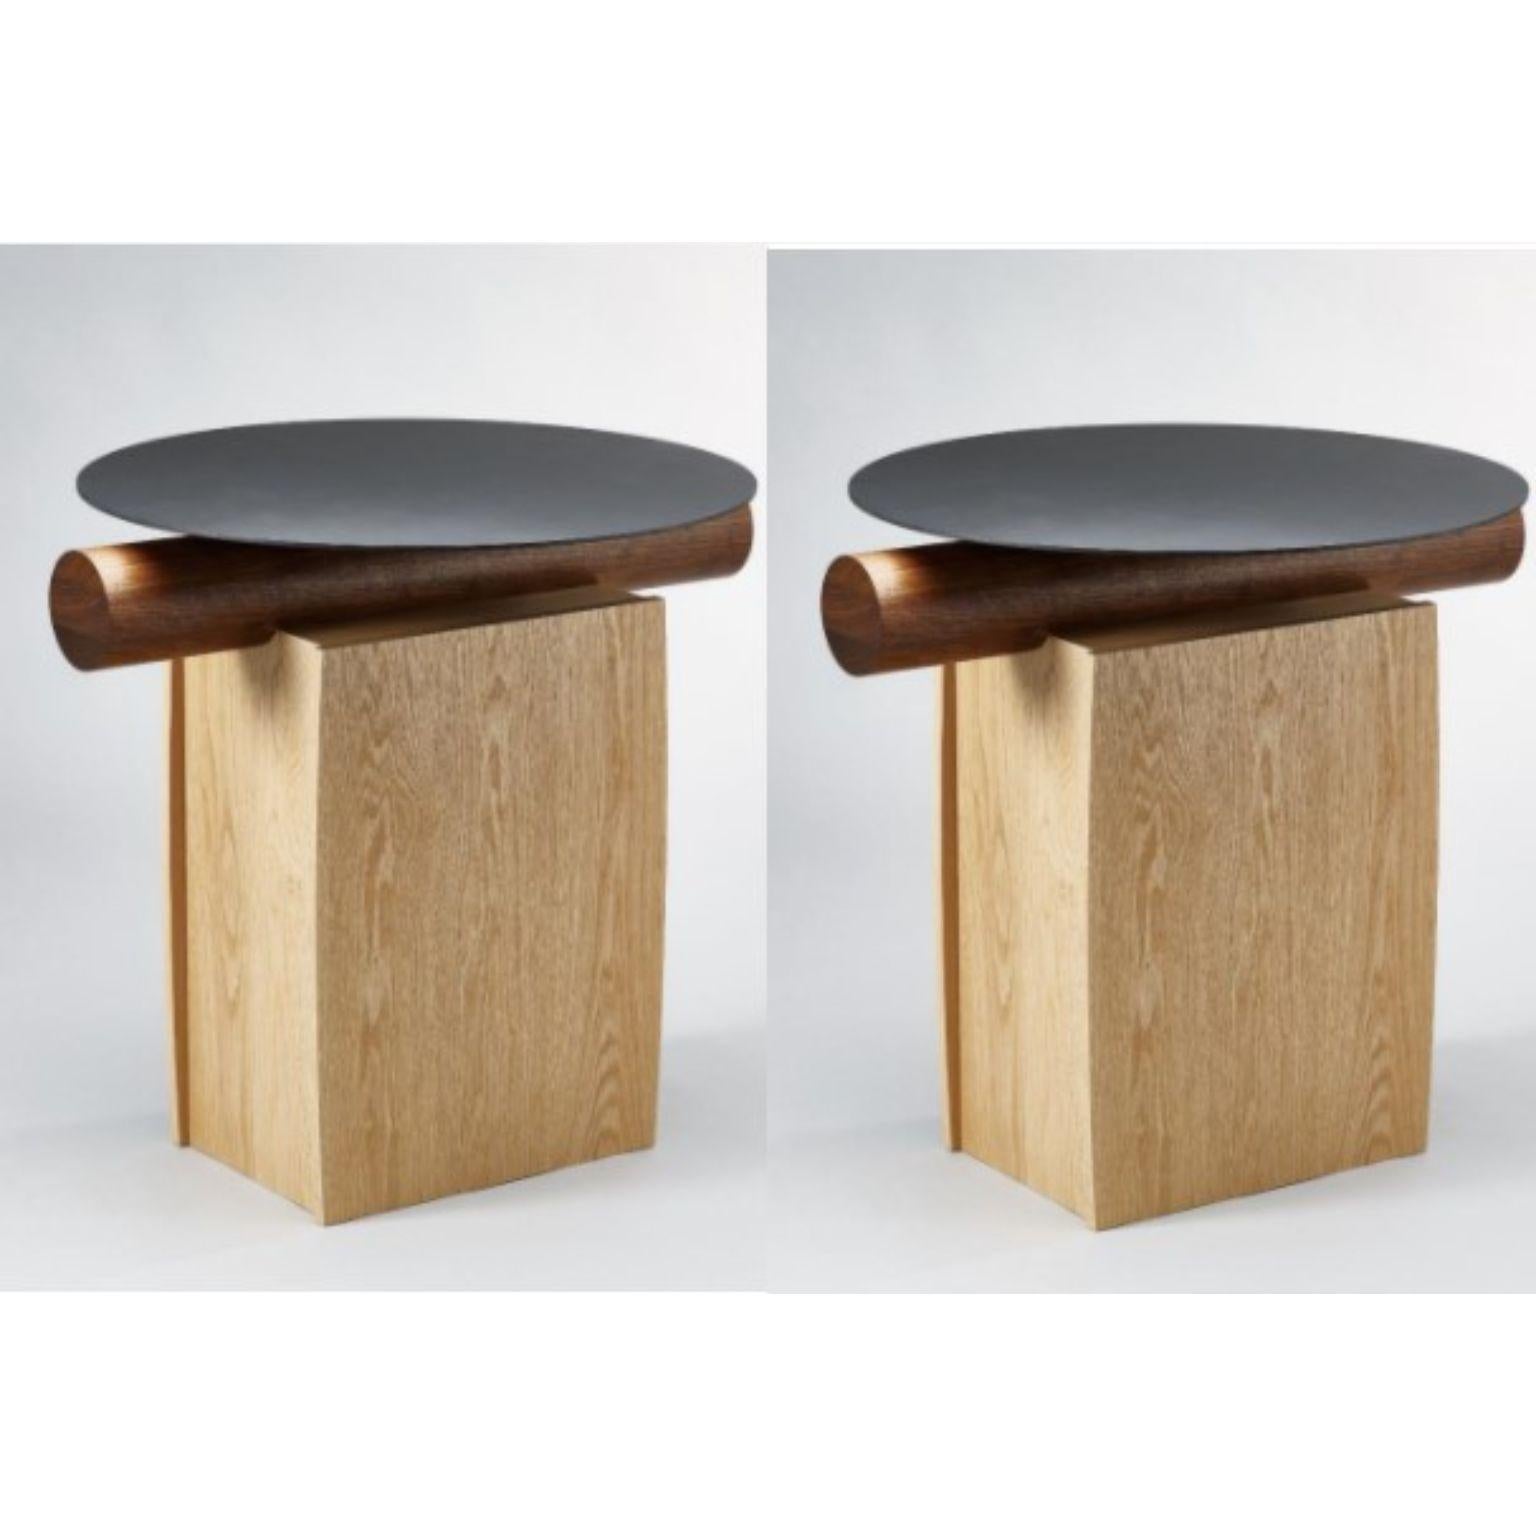 Ensemble de 2 tables rondes Heritage par Lee Jung Hoon
Dimensions : D80 x L70 x H472,4 cm
MATERIAL : chêne rouge, noyer, acier inoxydable, corrosion

La série Heritage, créée par le designer Lee Jung-hoon, est une collection de meubles modernes